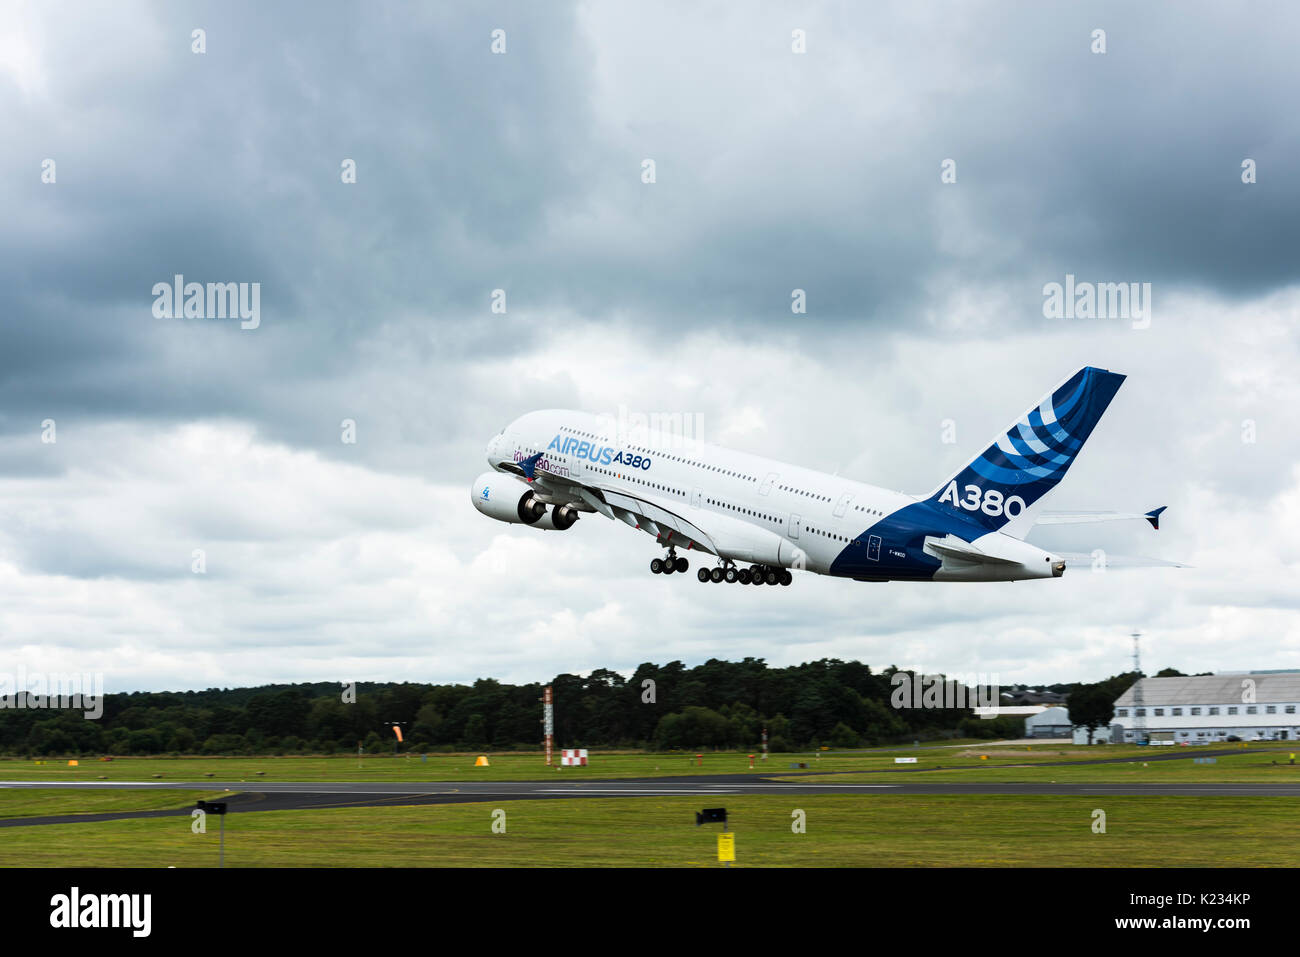 Der Airbus A380, das größte Passagierflugzeug der Welt, während sie fliegt Anzeige an der Farnborough International Air-Show. Stockfoto